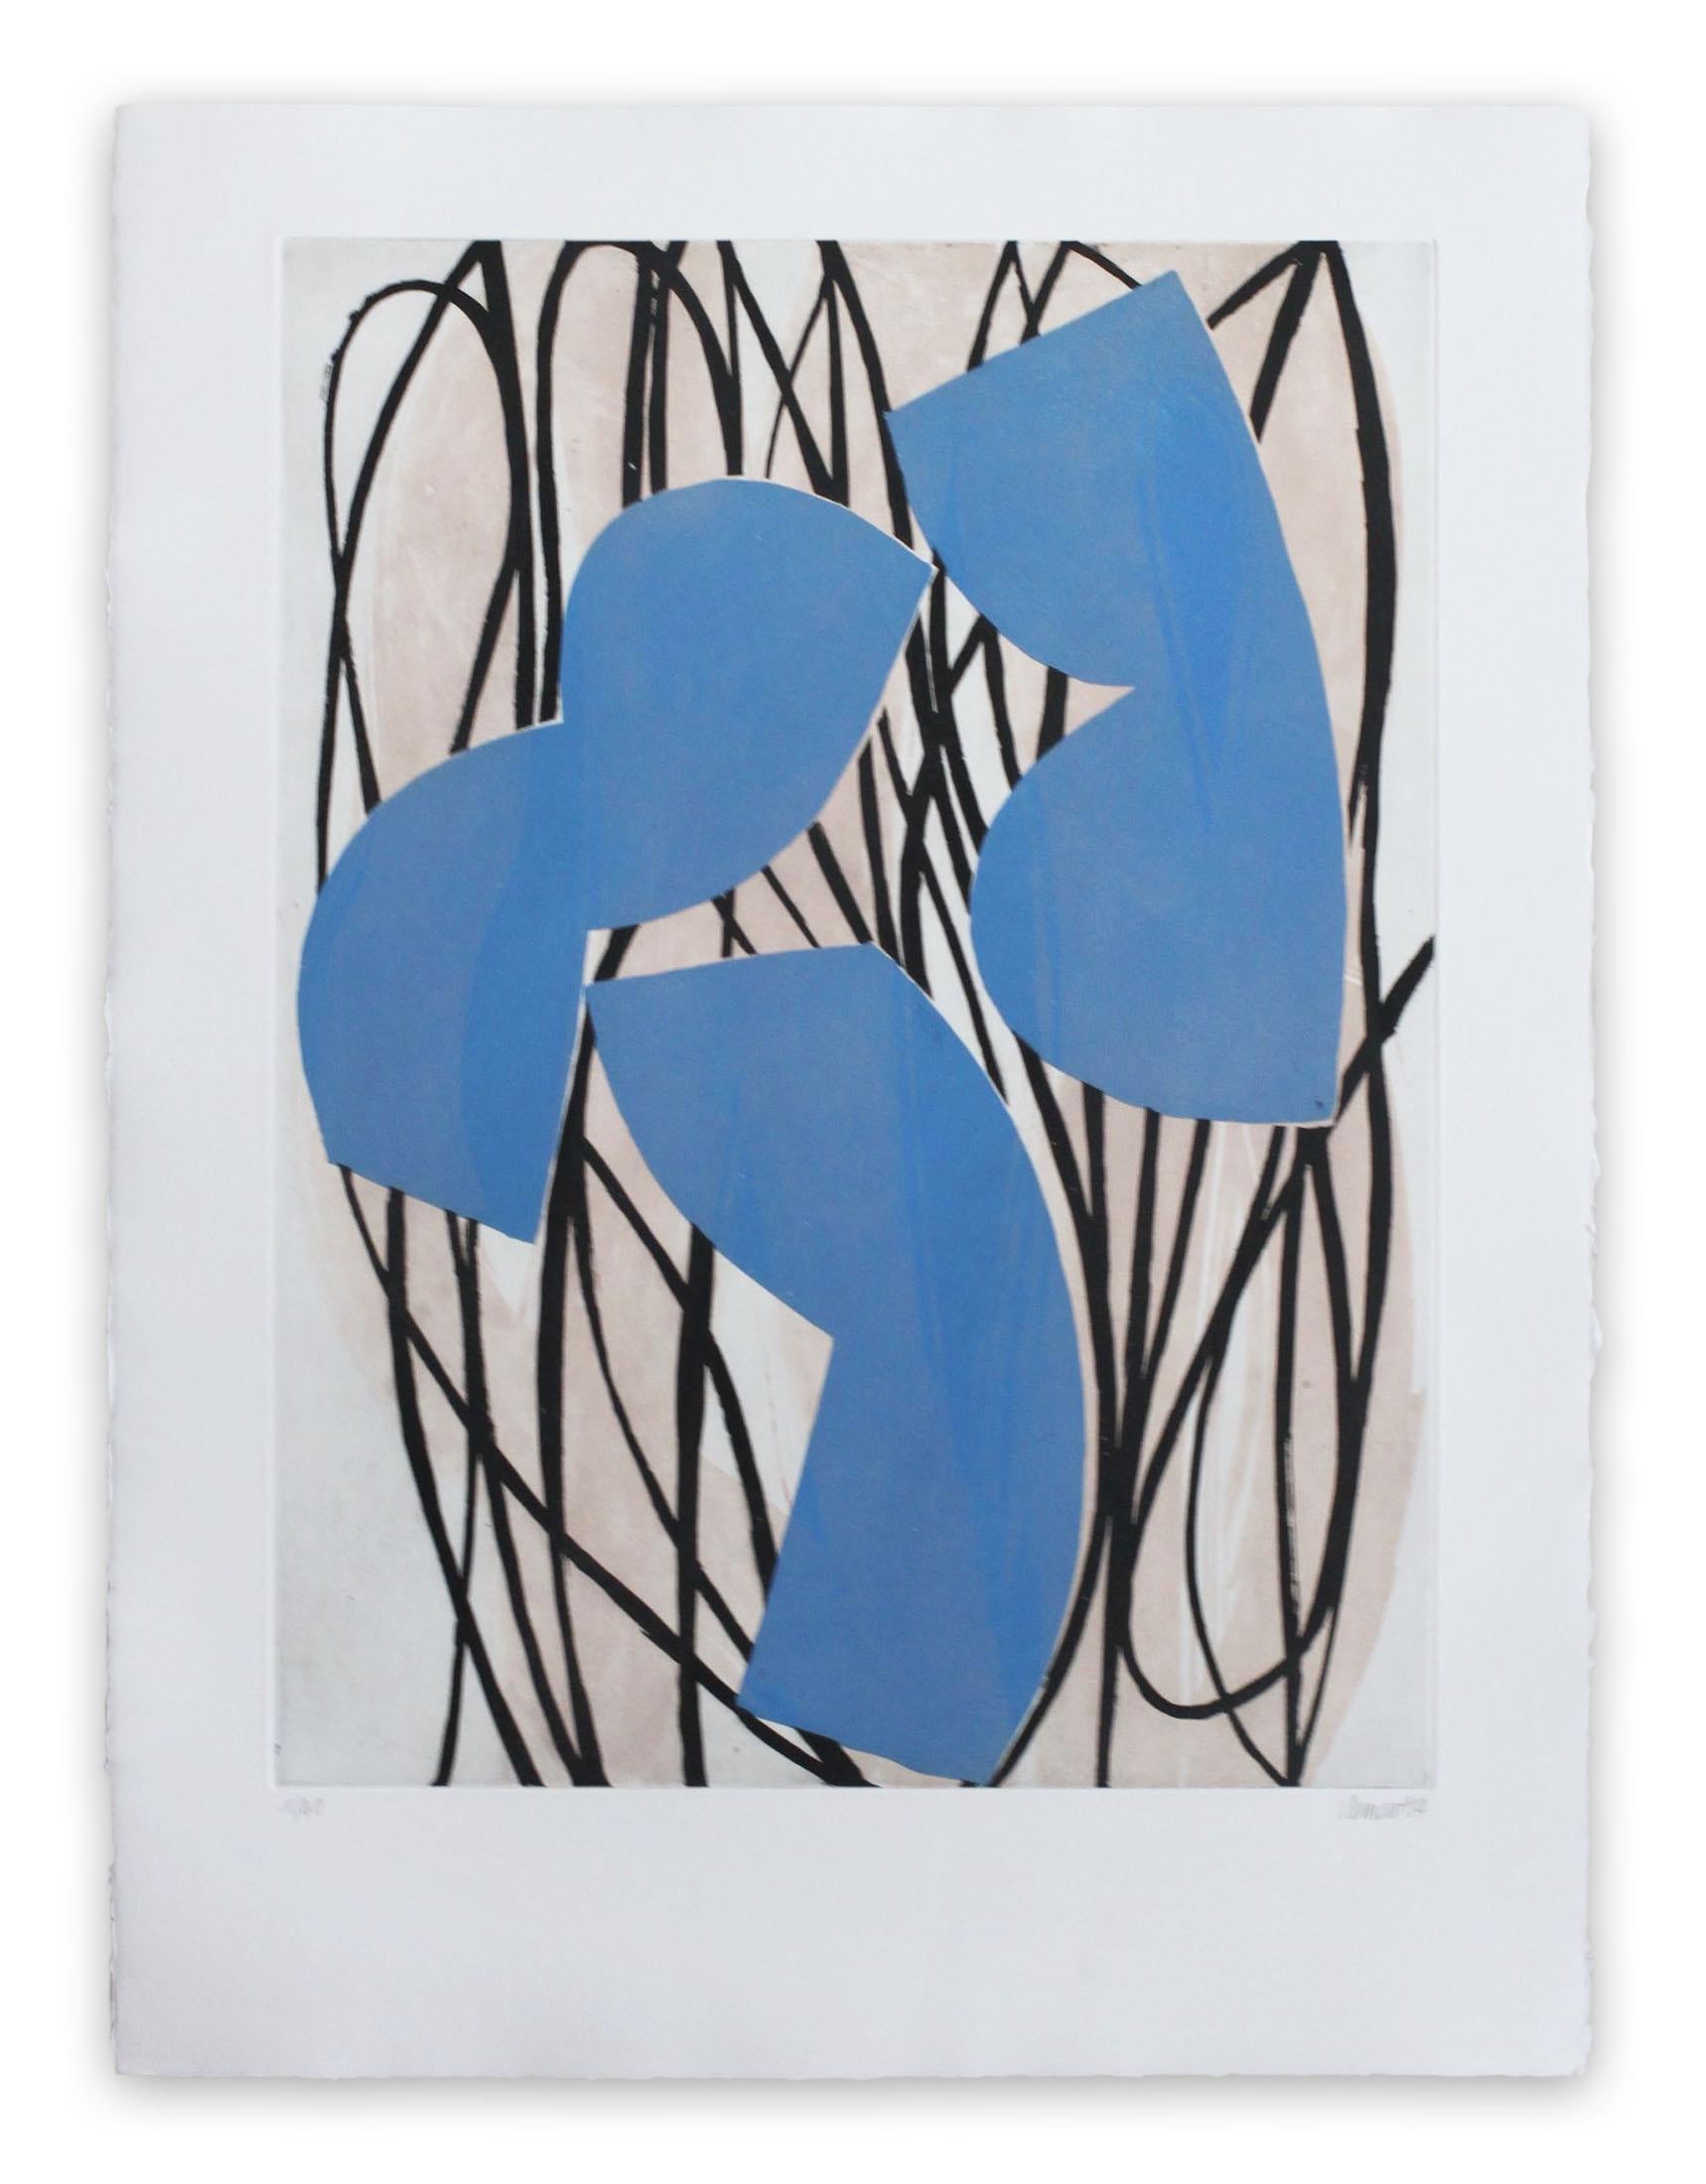 Alain Clément Abstract Print - 14AV7G-2014 (Abstract print)